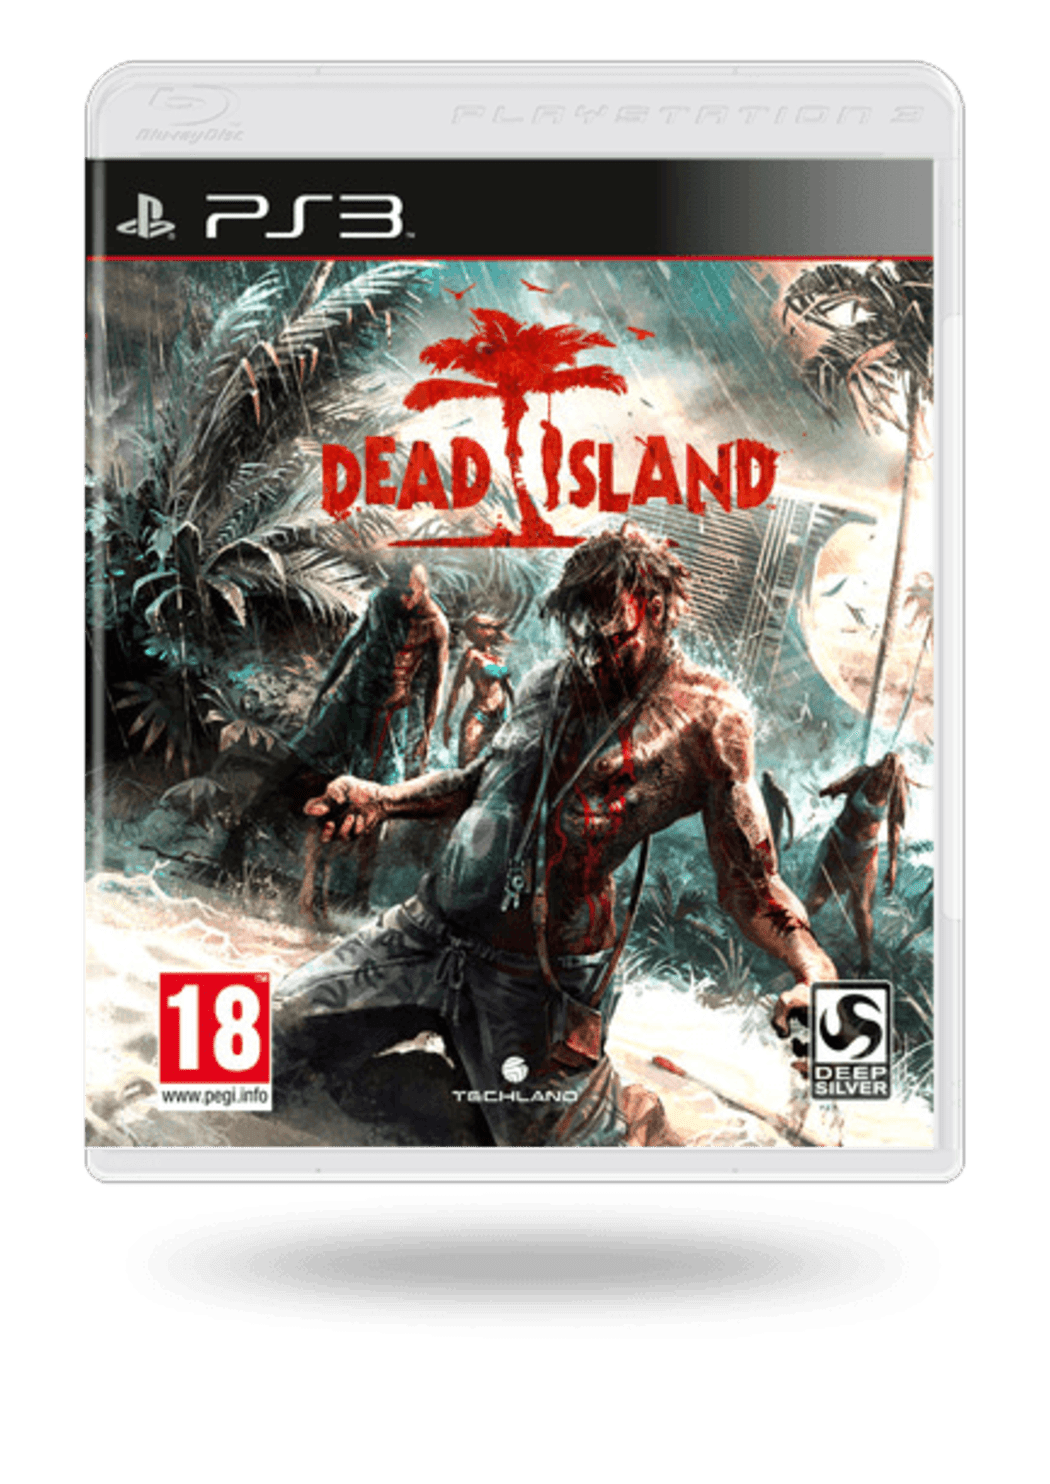 Дед исланд 2 купить. Dead Island ps3 русская версия.